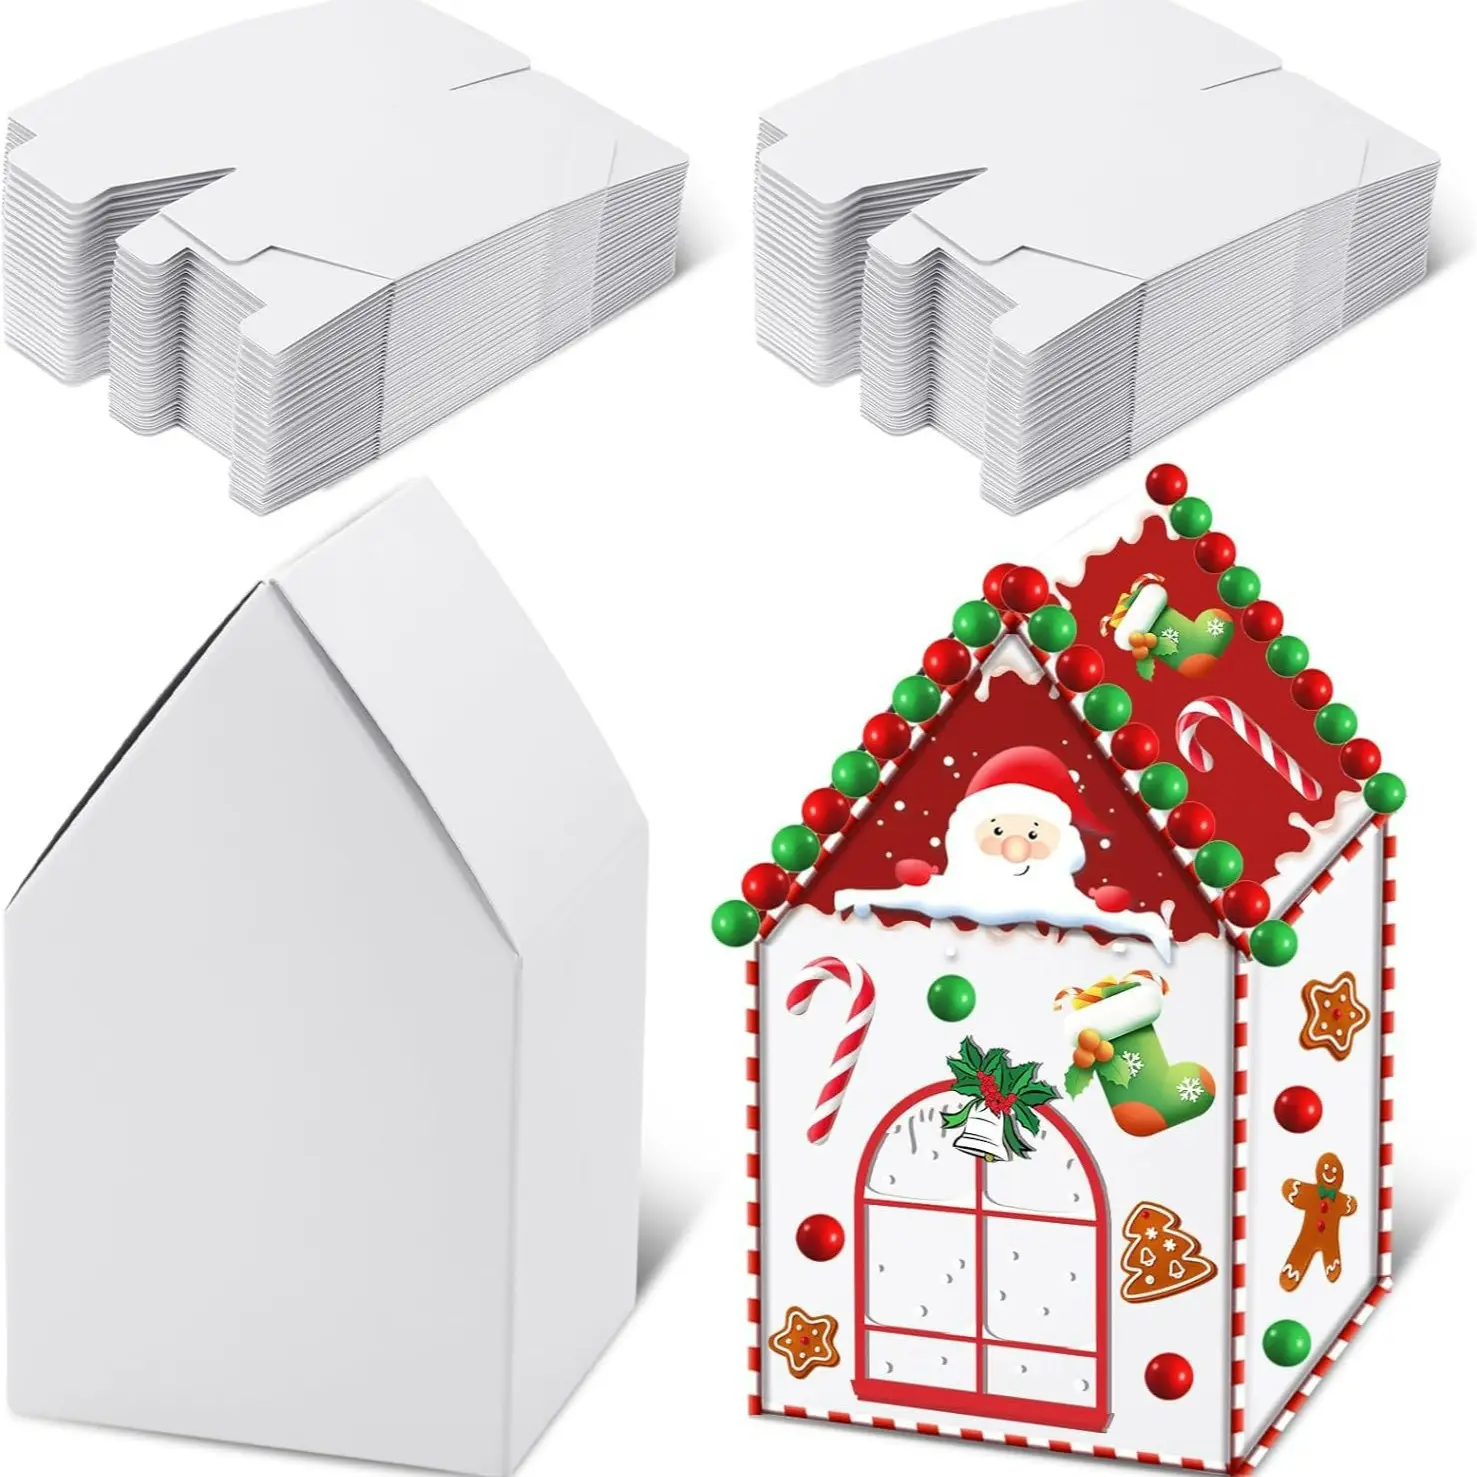 Rumah Natal bentuk papan kertas kotak kemasan kue jahe kertas permen manis kue kemasan kotak hadiah untuk Natal